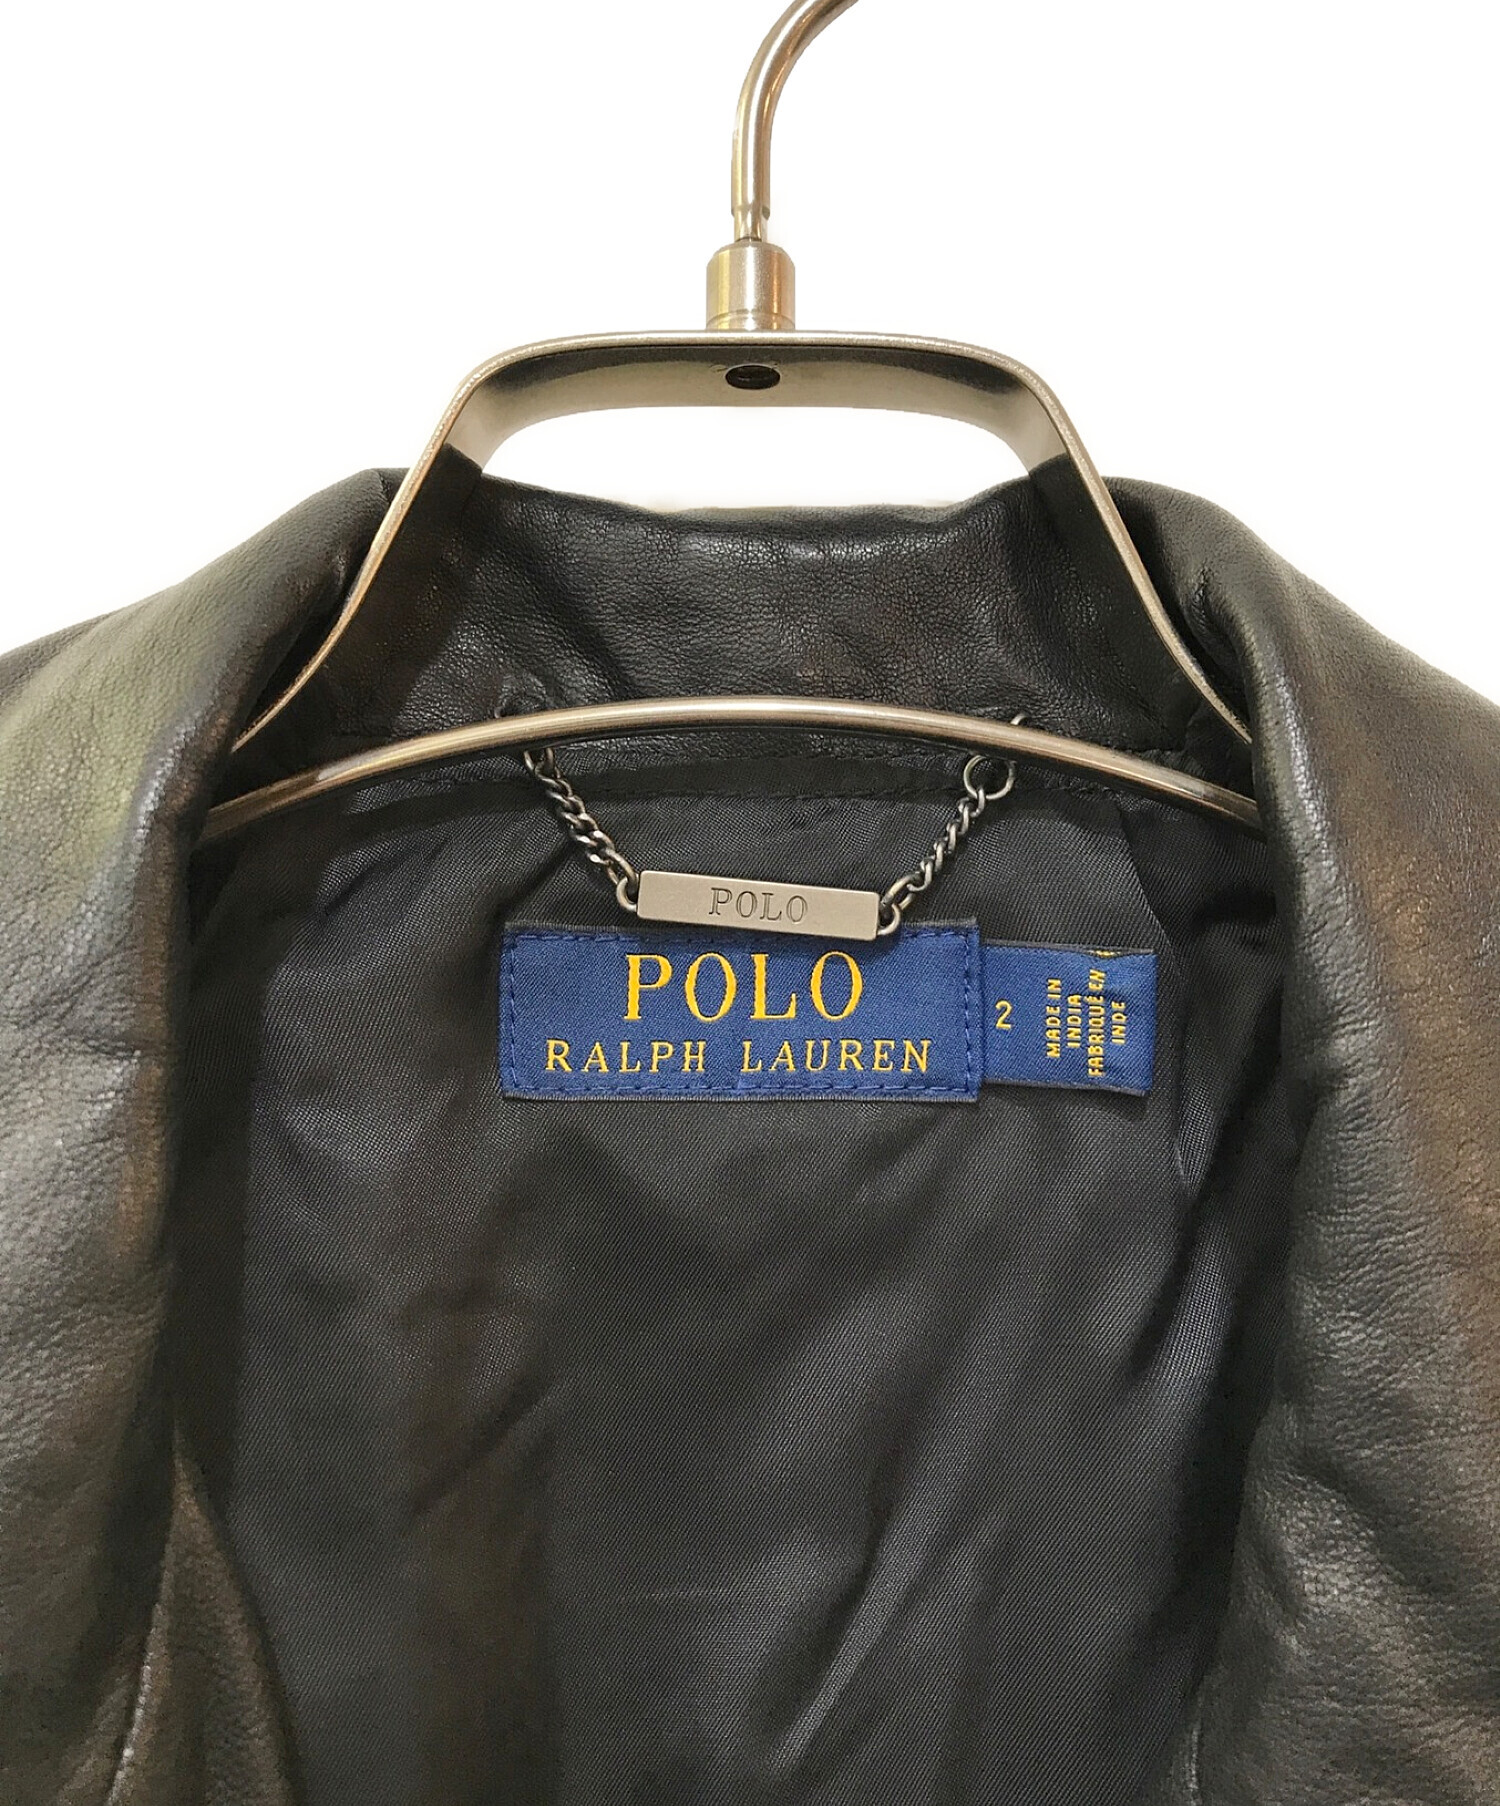 POLO RALPH LAUREN (ポロ・ラルフローレン) ラムレザージャケット ブラック サイズ:2